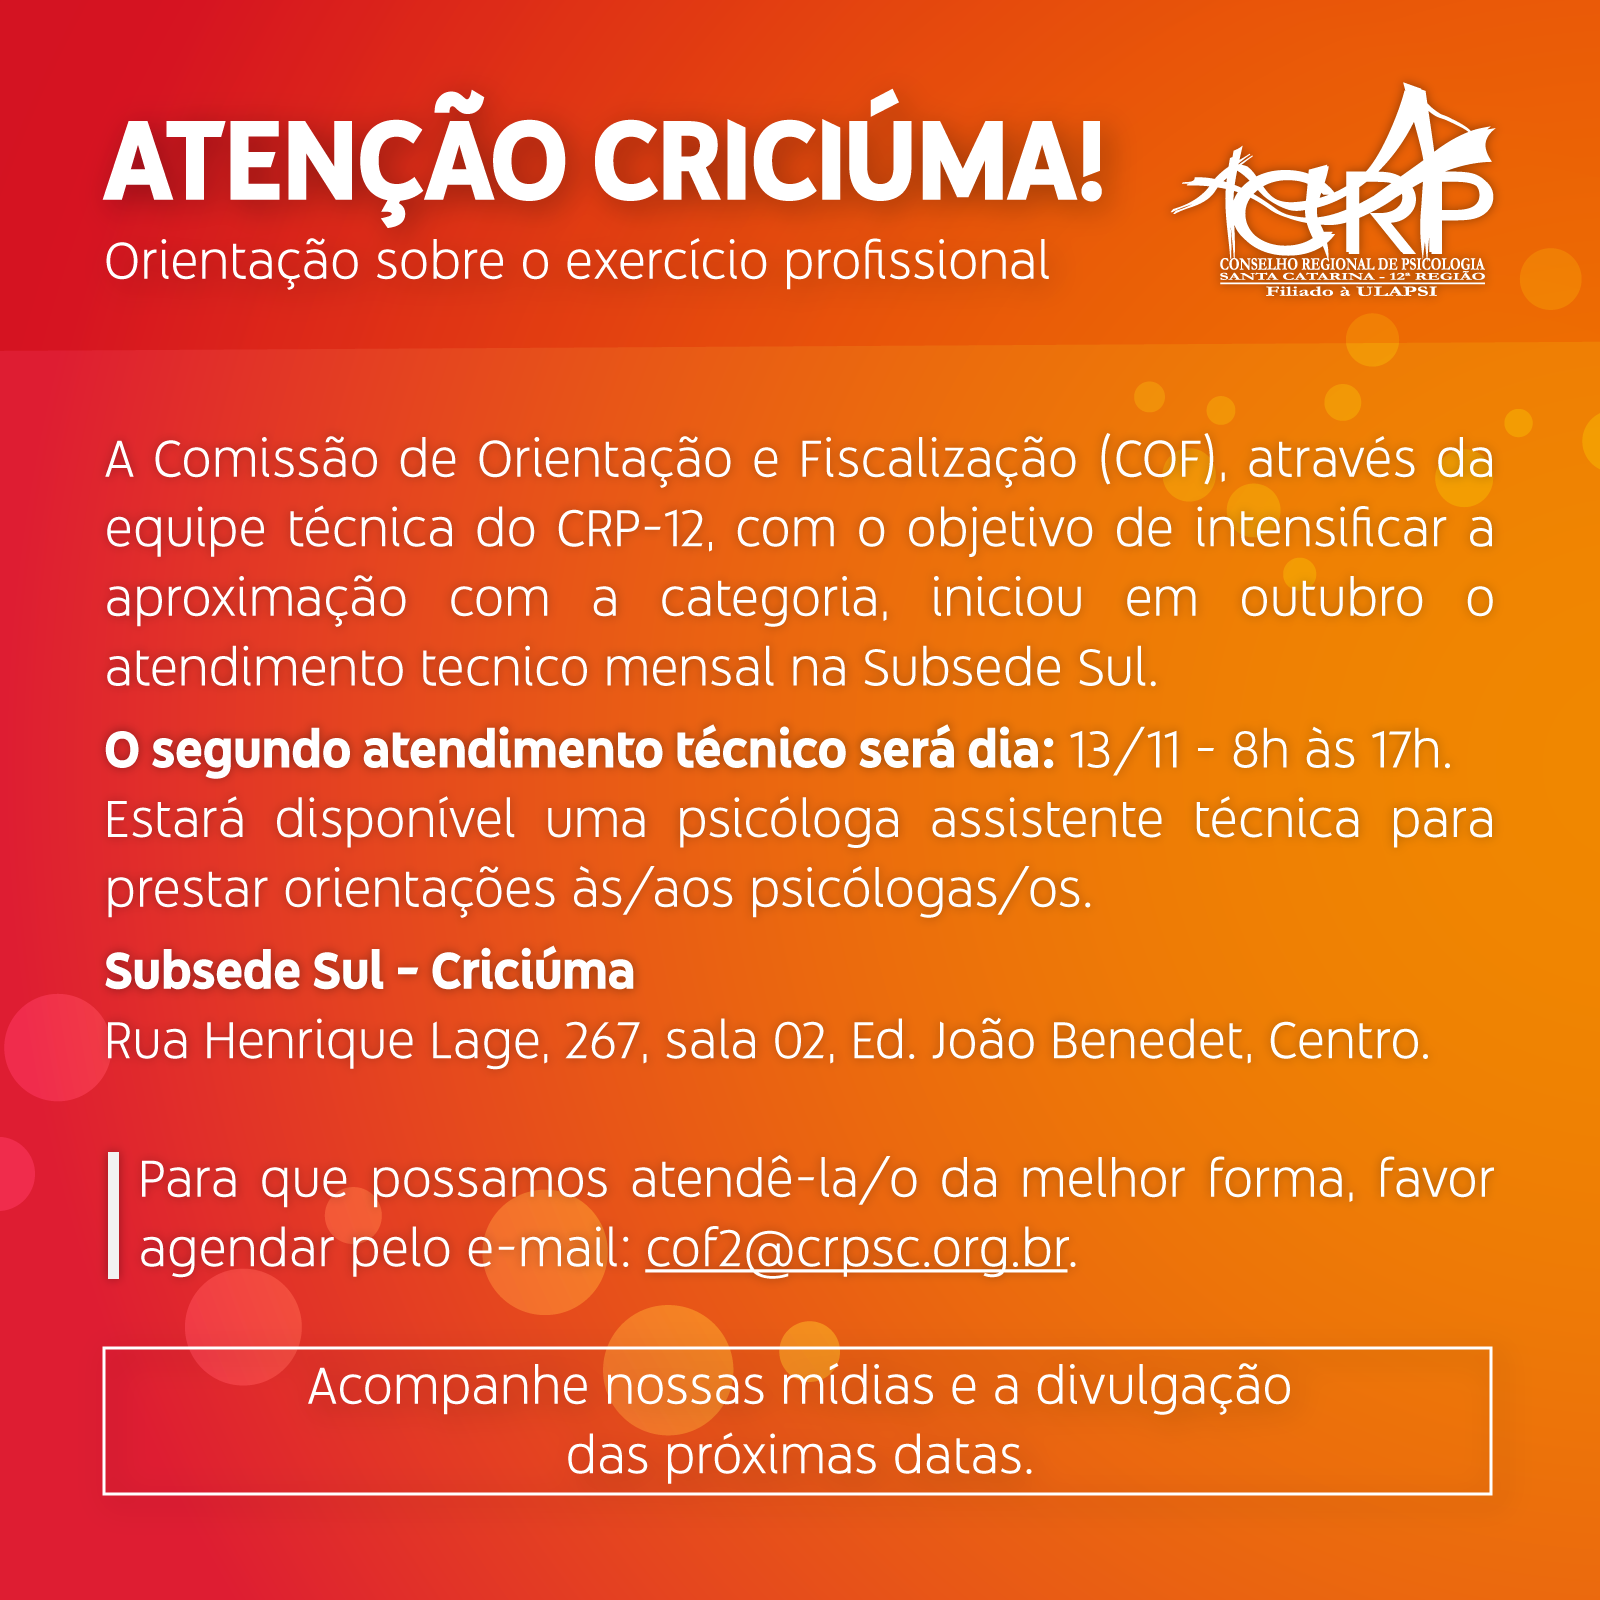 ATENÇÃO CRICIÚMA! Orientação sobre o exercício profissional - 13/11